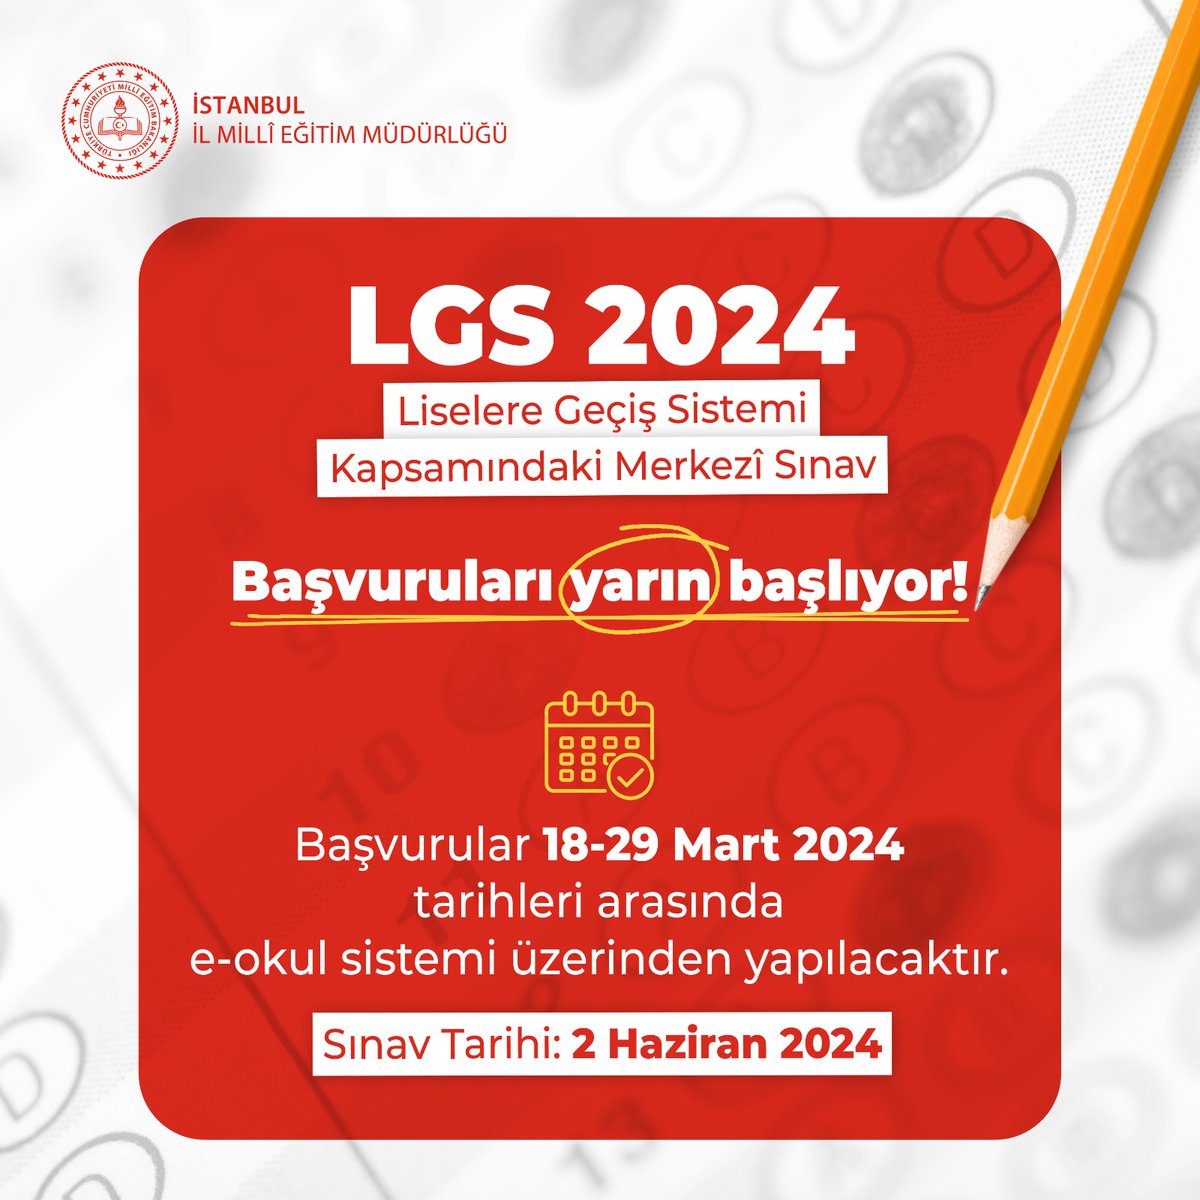 📢 Sevgili Öğrenciler, Millî Eğitim Bakanlığımızca bu yıl 2 Haziran 2024 tarihinde gerçekleştirilecek Liselere Geçiş Sistemi (LGS) kapsamındaki Merkezî Sınav başvuruları yarın başlıyor. 🔹Başvurular 18-29 Mart 2024 tarihleri arasında e-okul sistemi üzerinden yapılacaktır. 🔗…